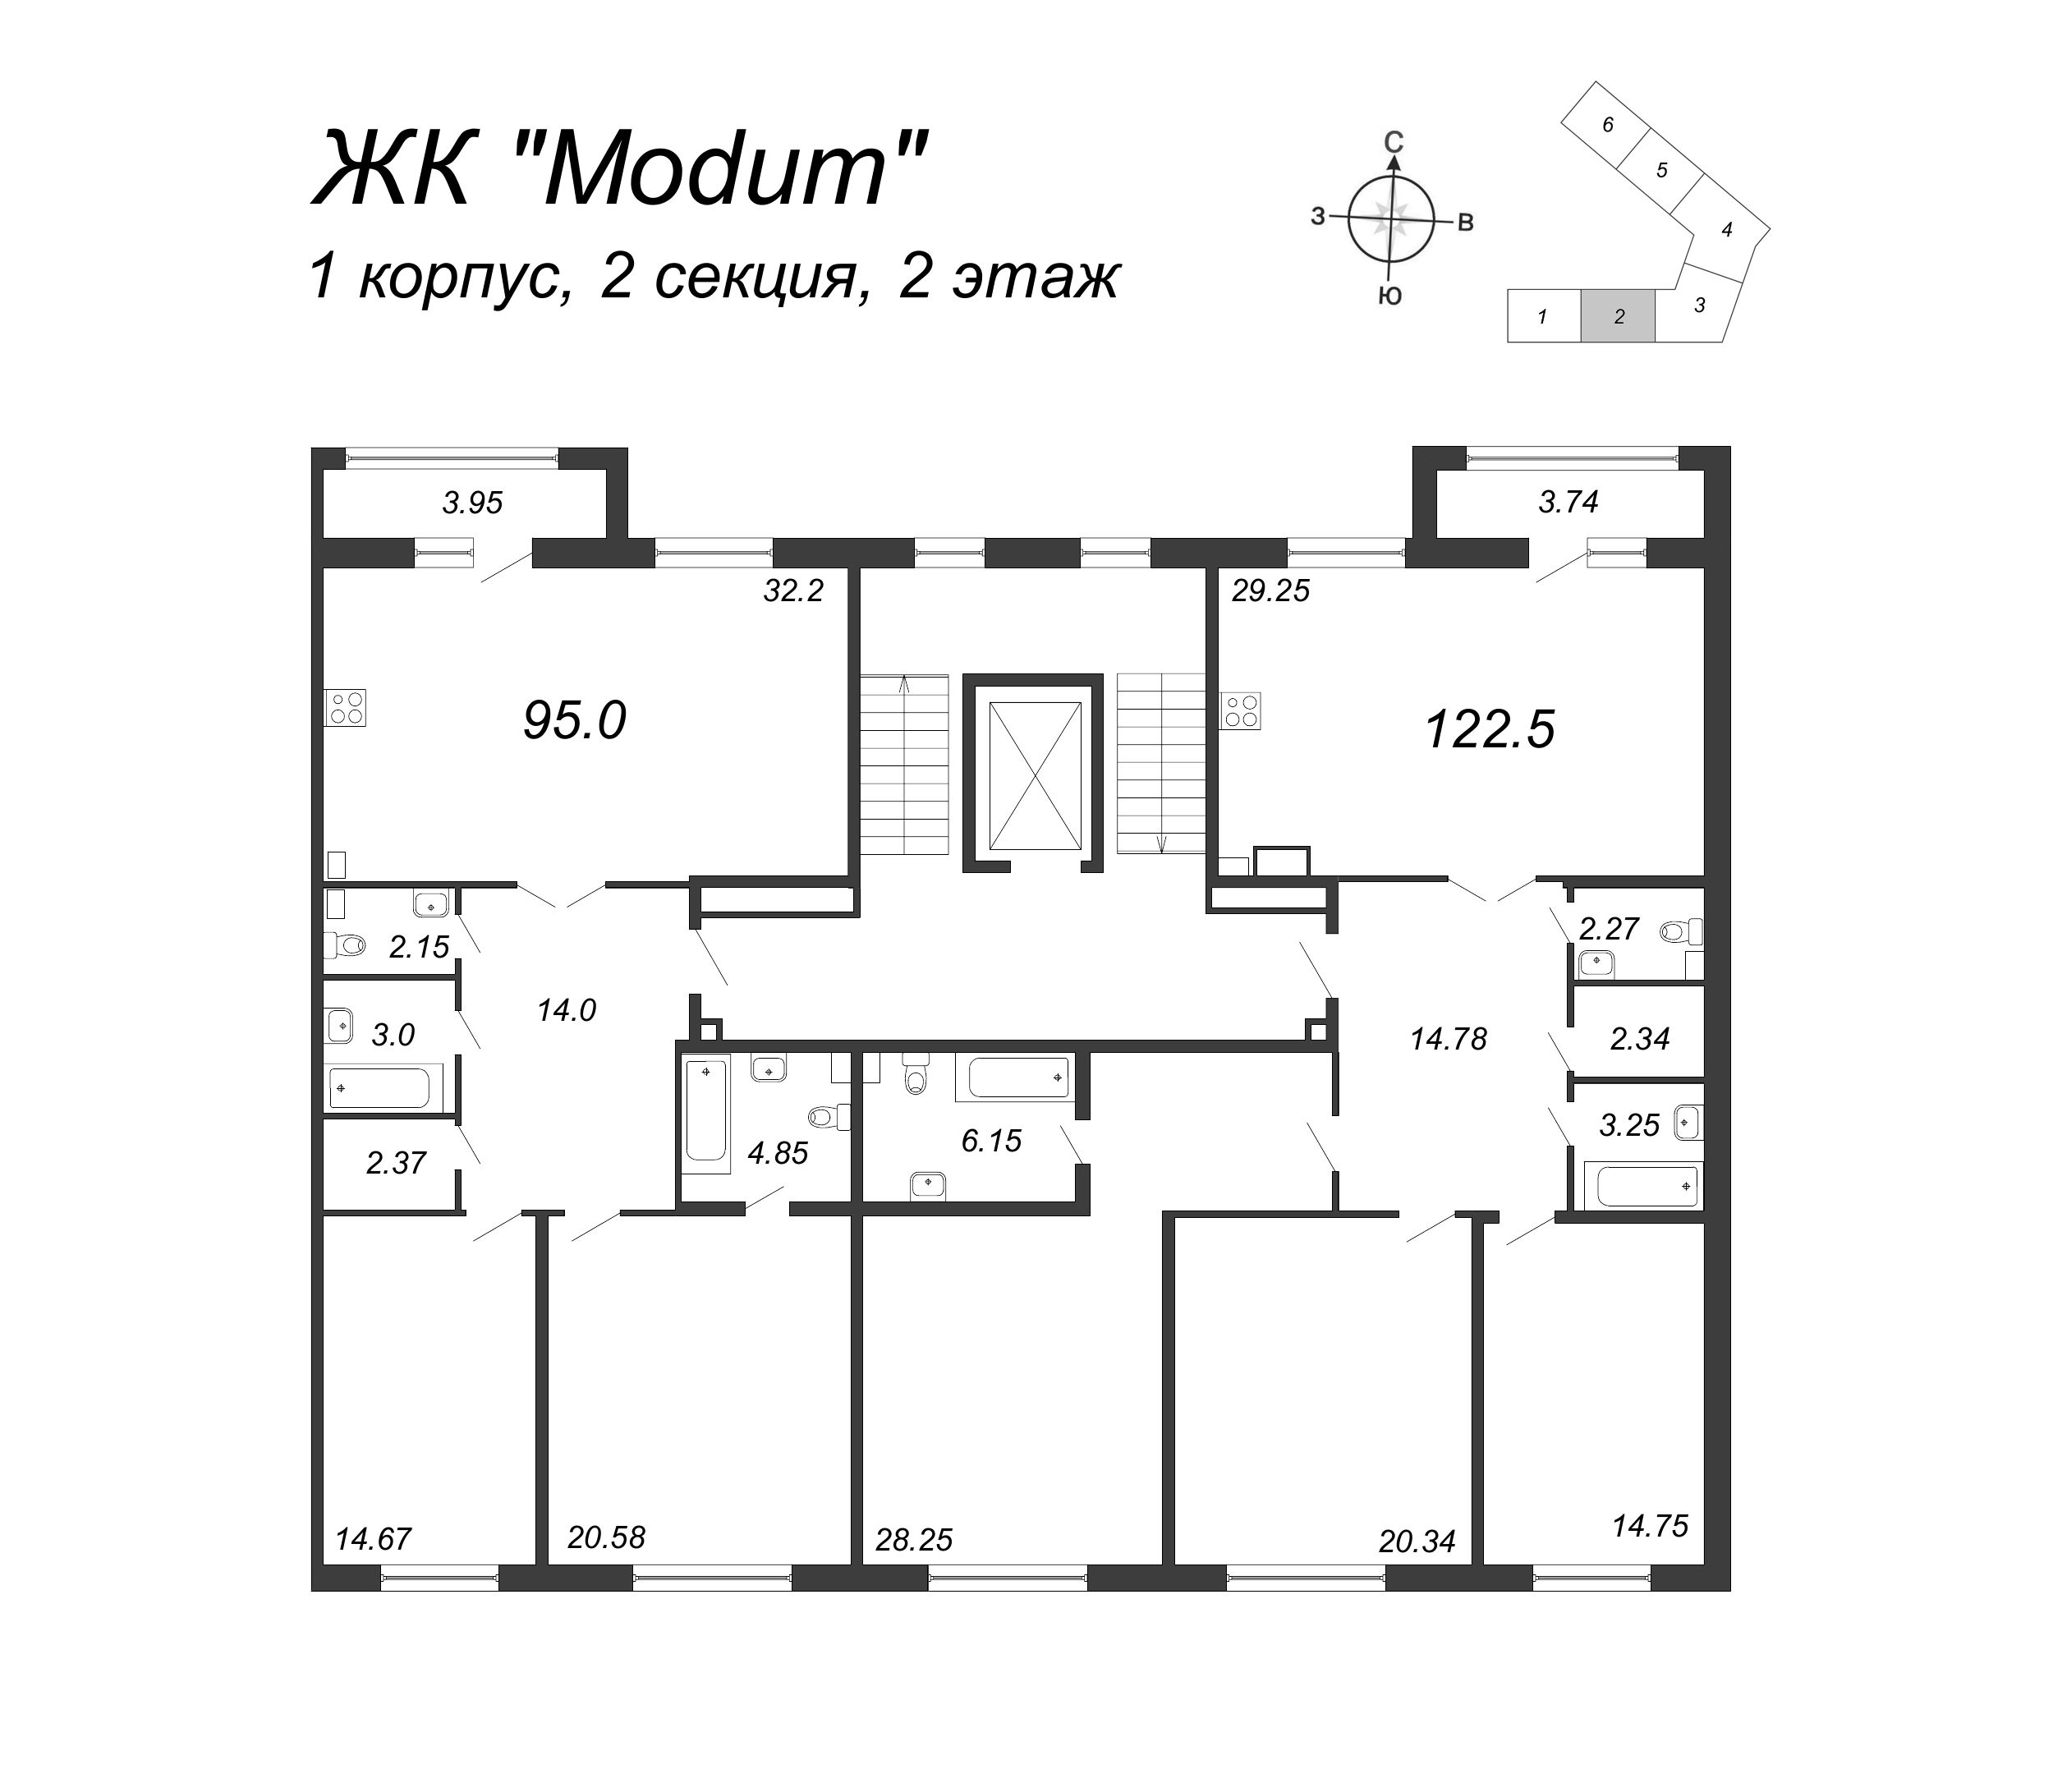 3-комнатная (Евро) квартира, 95 м² в ЖК "Modum" - планировка этажа